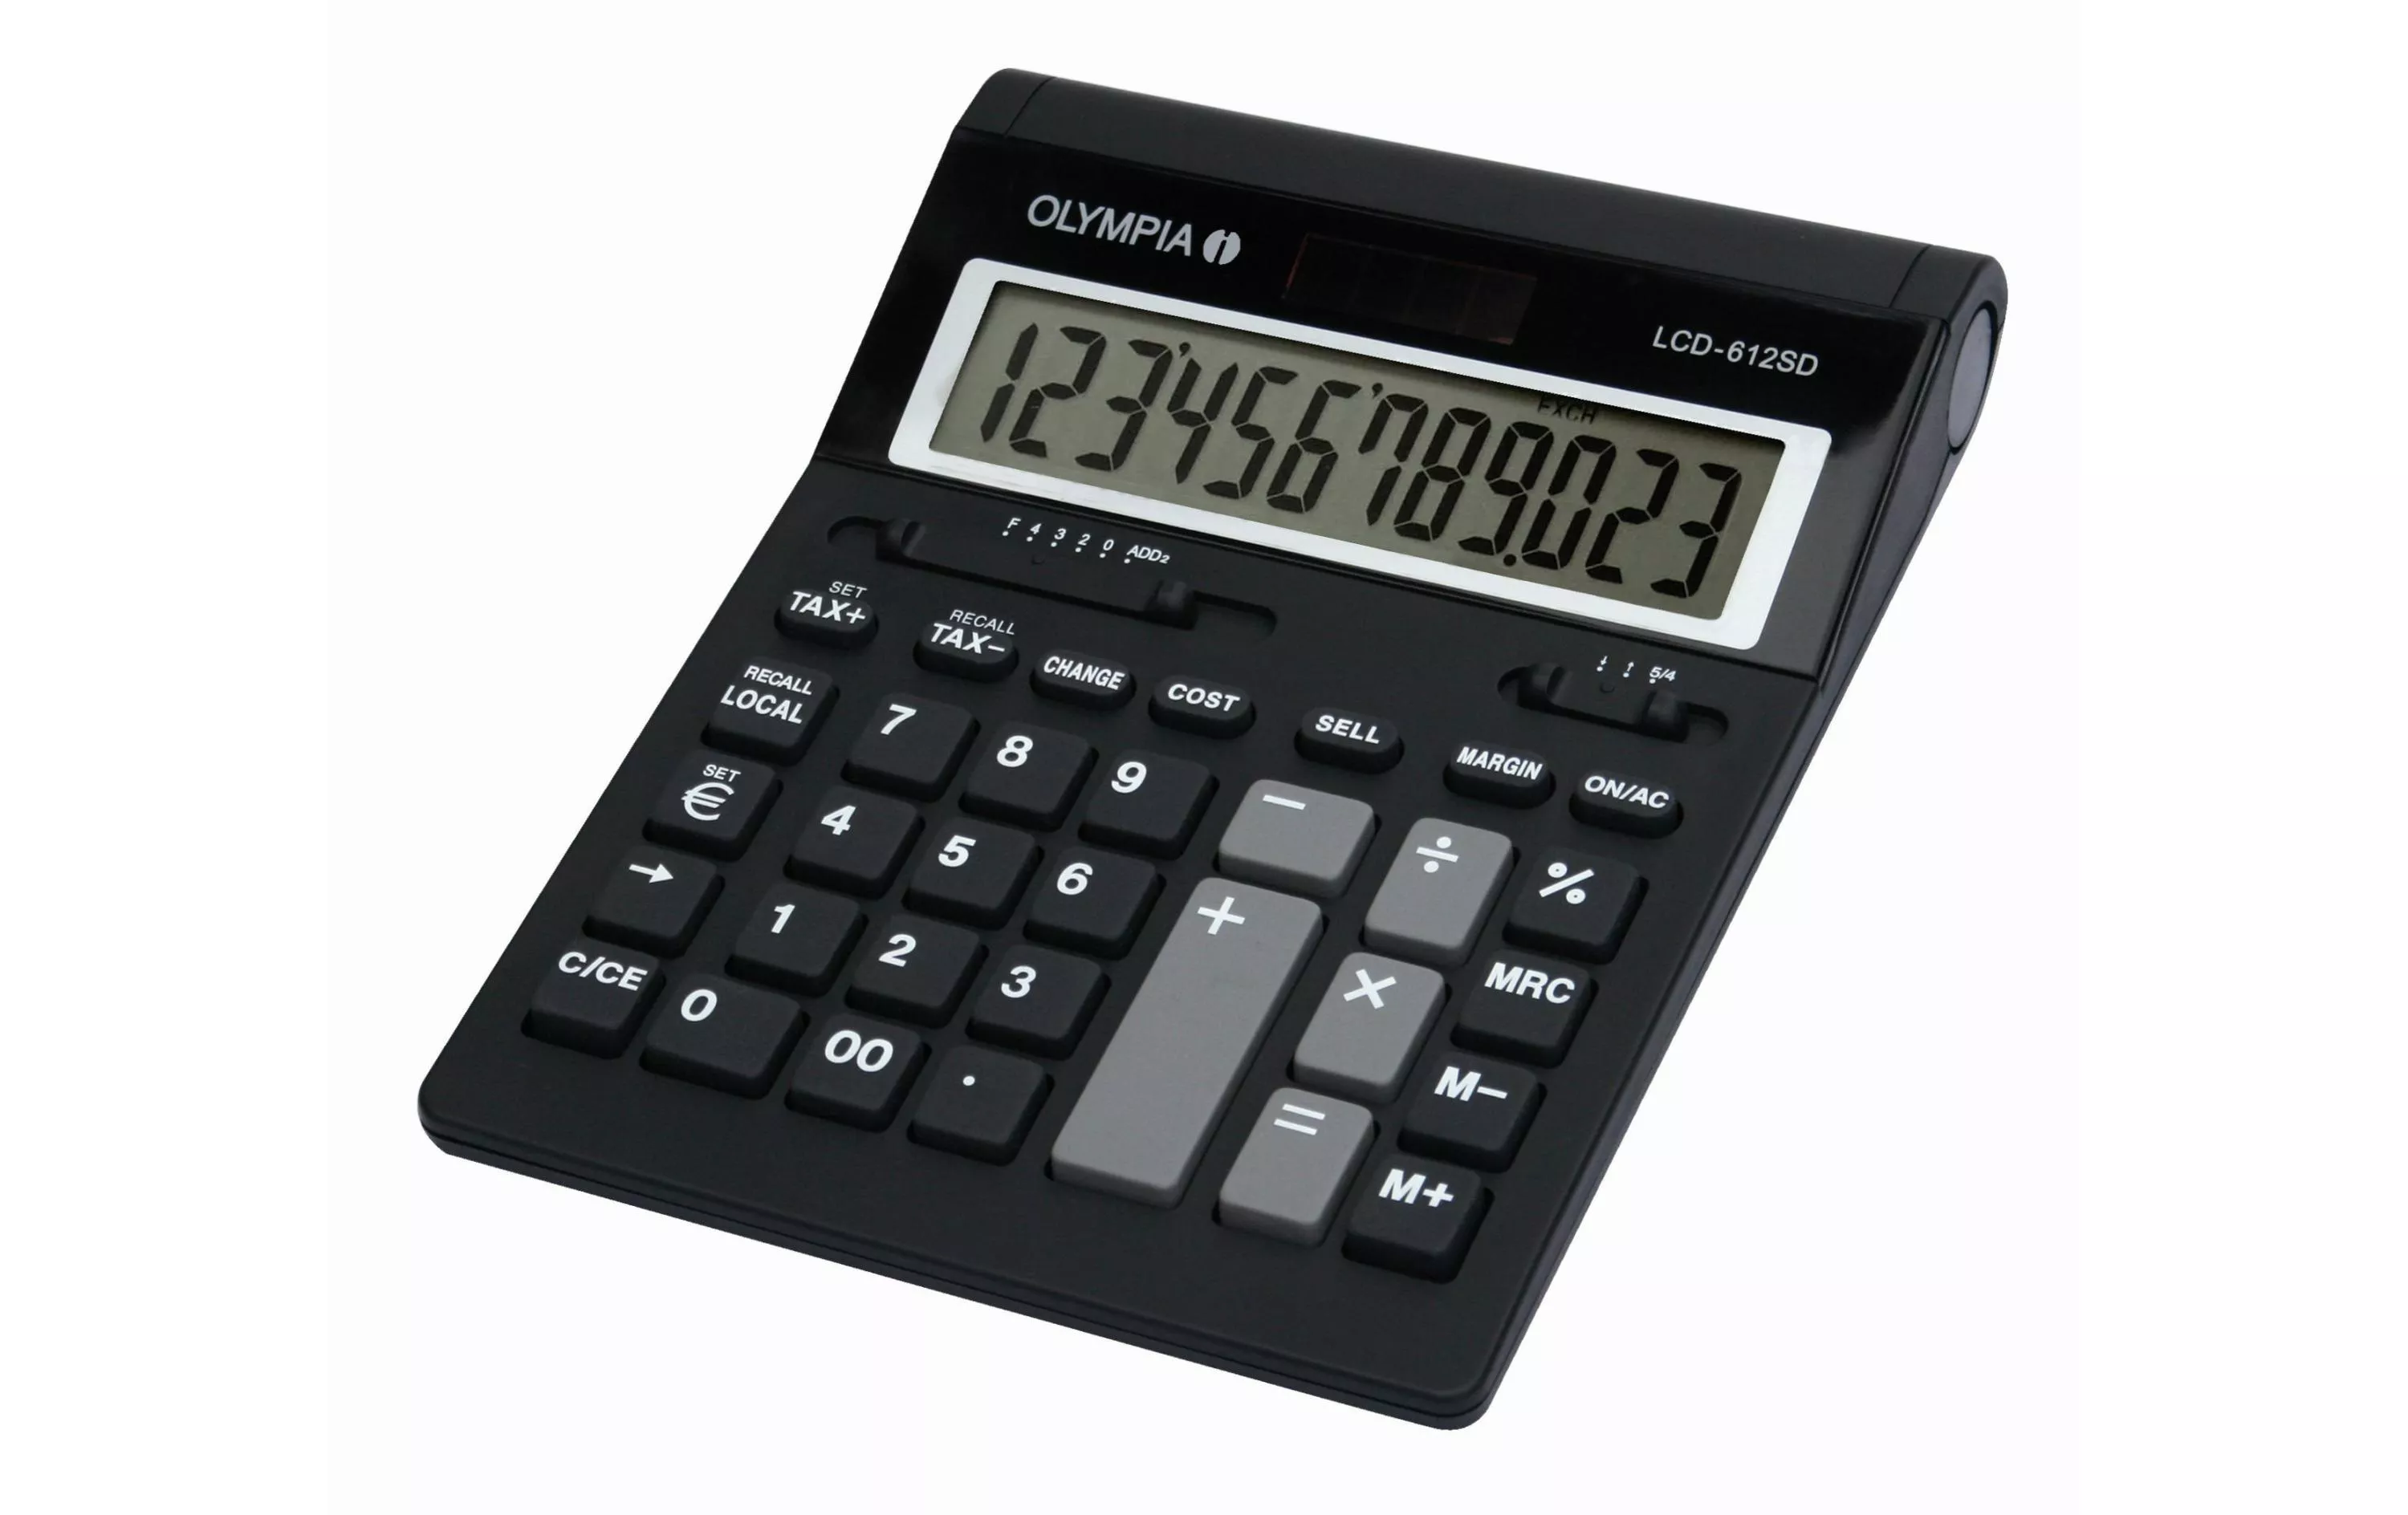 Taschenrechner LCS 612 SD